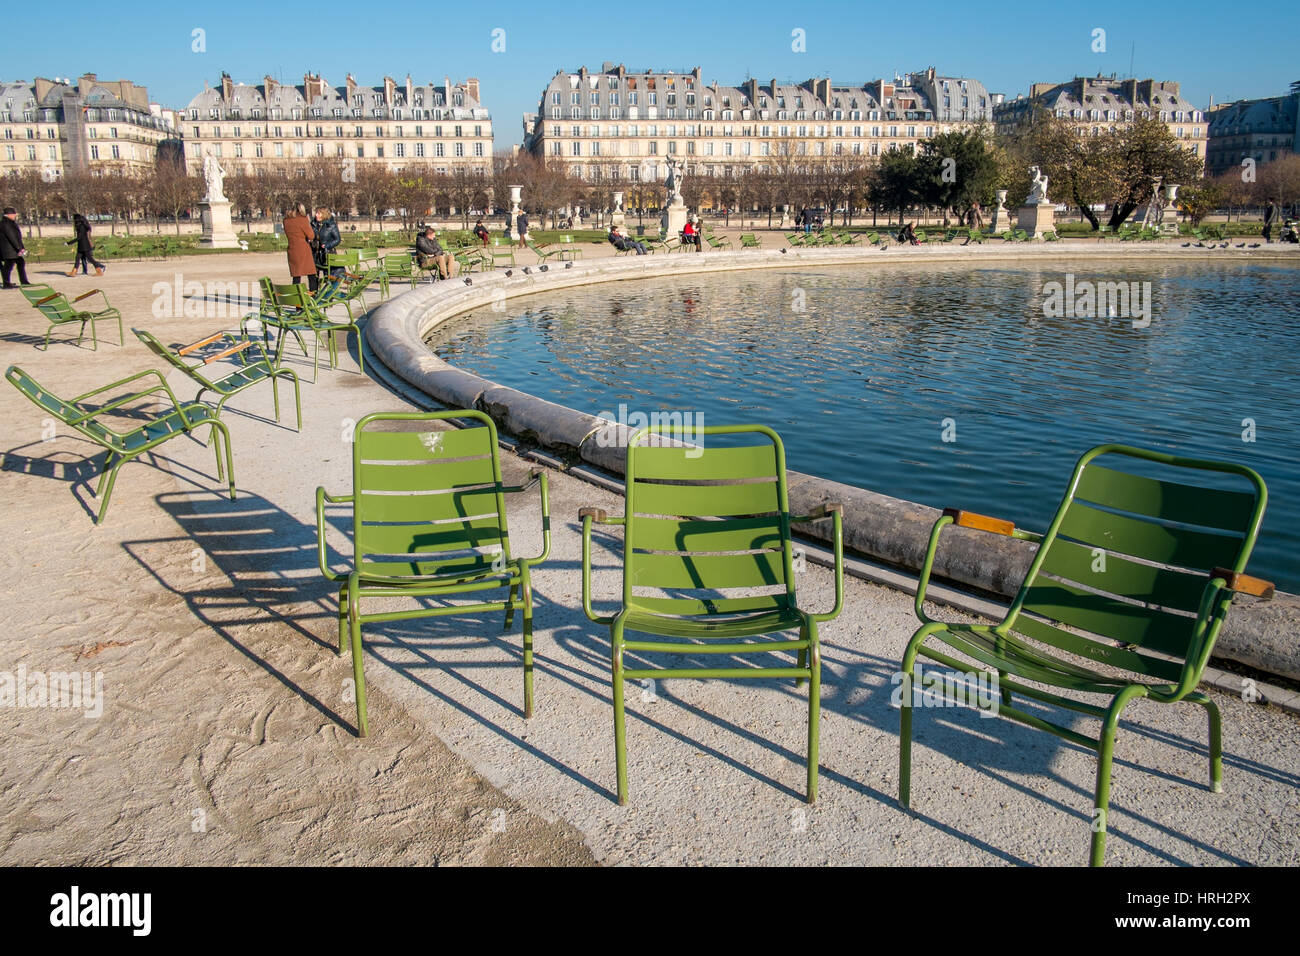 Bénéficiant d''Le soleil d'hiver à Grand bassin octogonal du Jardin des Tuileries, dominé par le grand appartement de la rue de Rivoli, Paris, France Banque D'Images